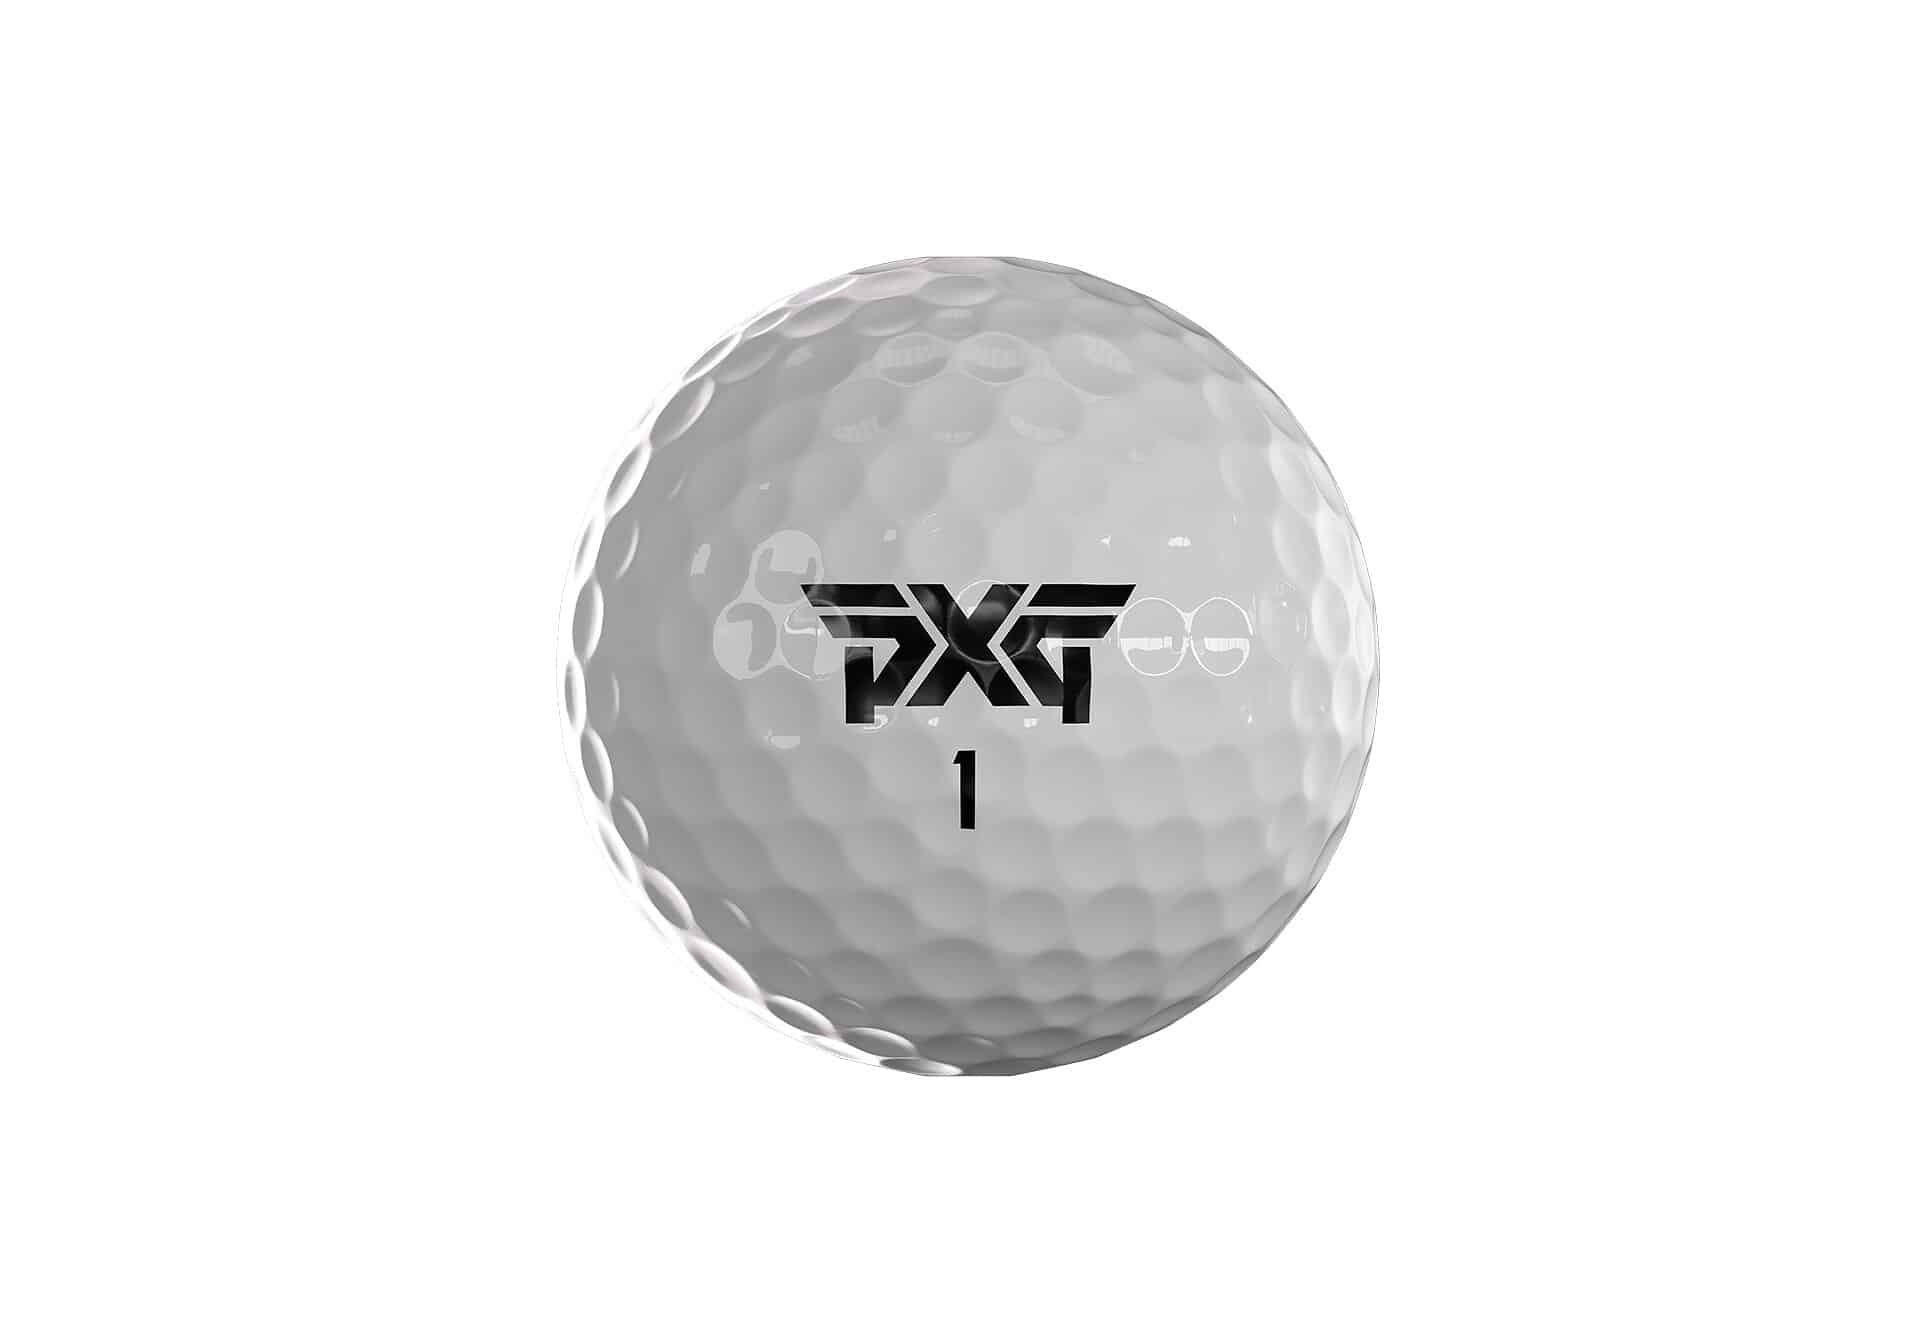 PXG golf ball